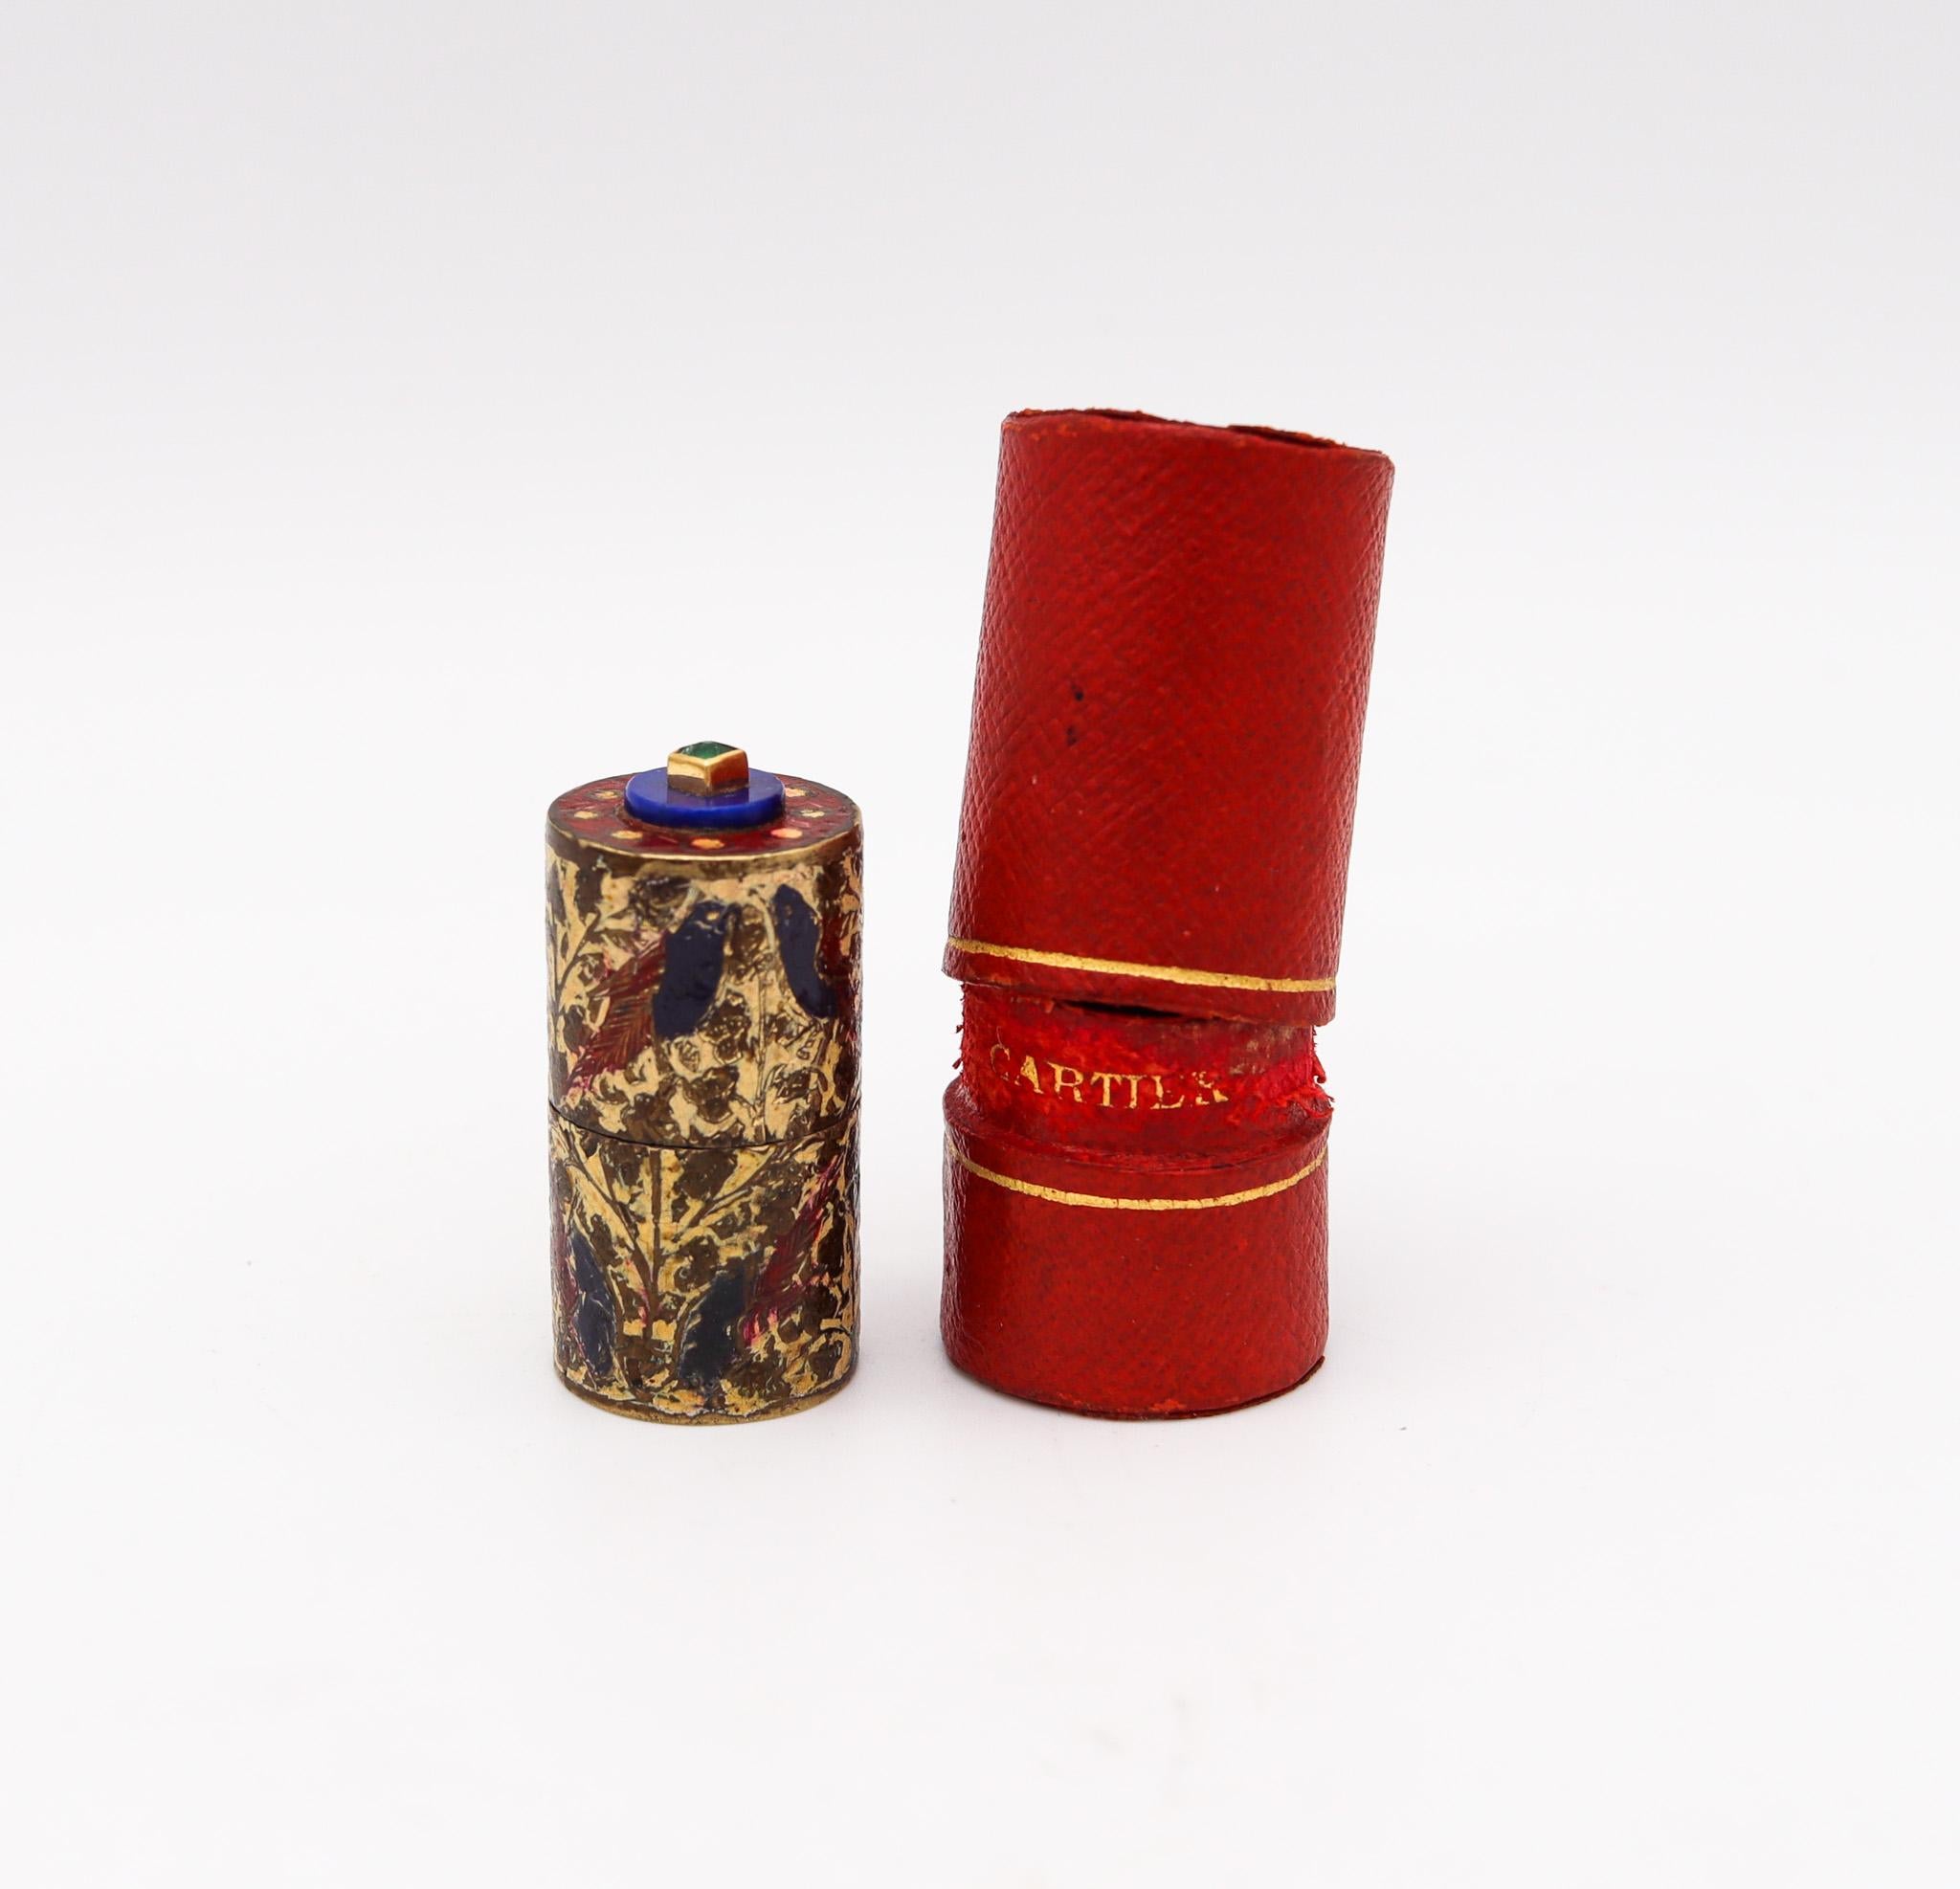 Mughal Damen Tom Pouce Feuerzeug entworfen von Cartier.

Fabelhaftes und extrem seltenes zylindrisches Damen-Benzinfeuerzeug. Sie wurde Mitte der 1920er Jahre in Paris während der Art-déco-Periode vom Haus Cartier entworfen. Das Miniatur-Feuerzeug